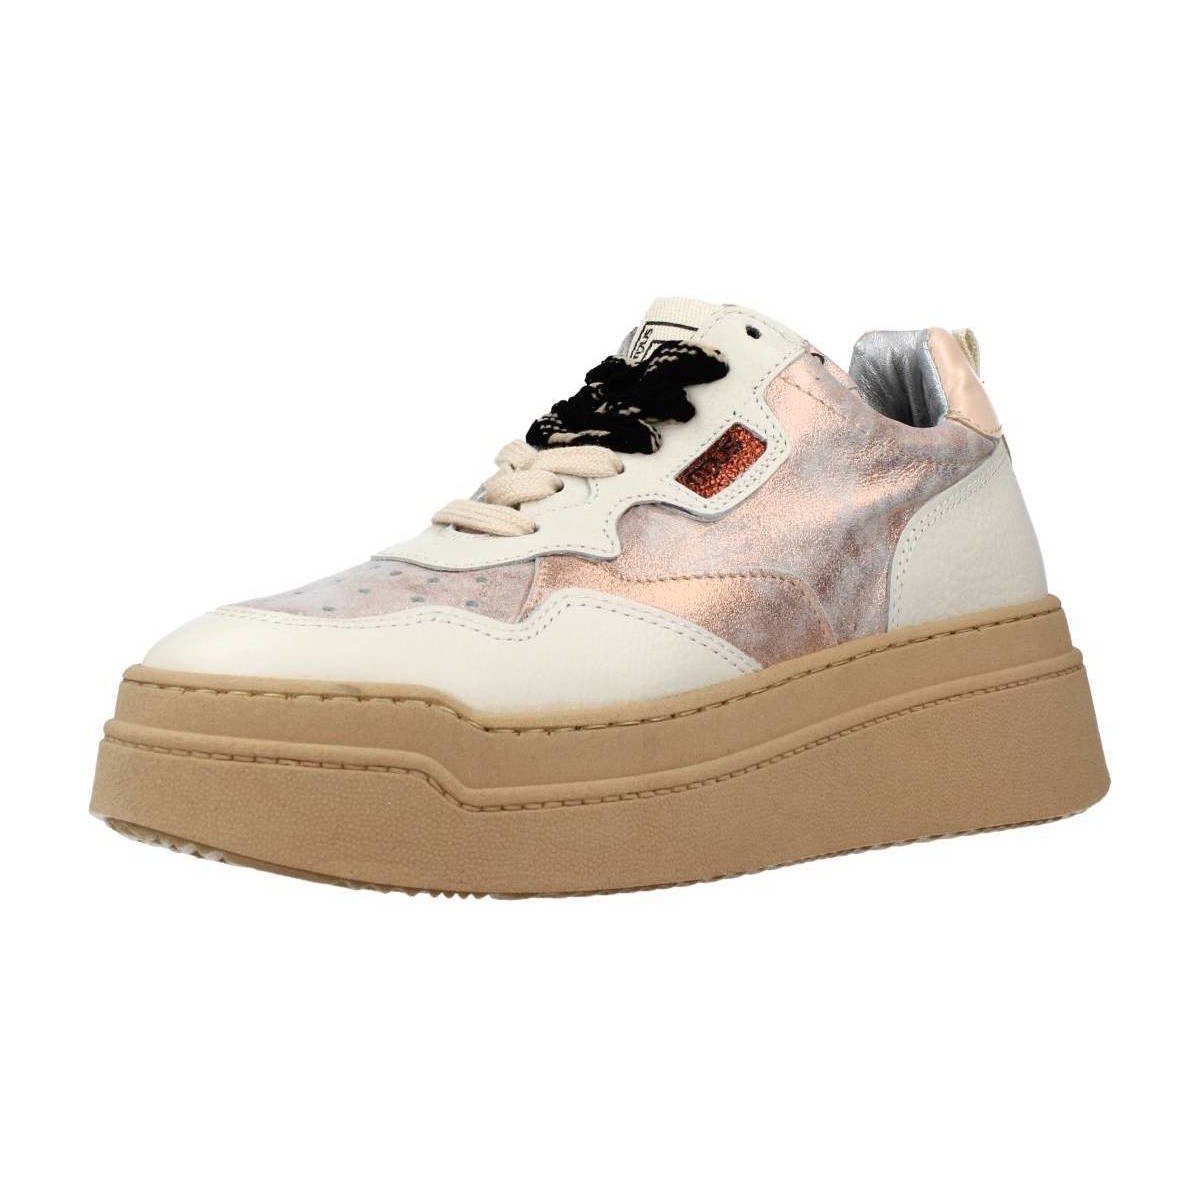 Pantofi Femei Sneakers Mjus P74102 roz